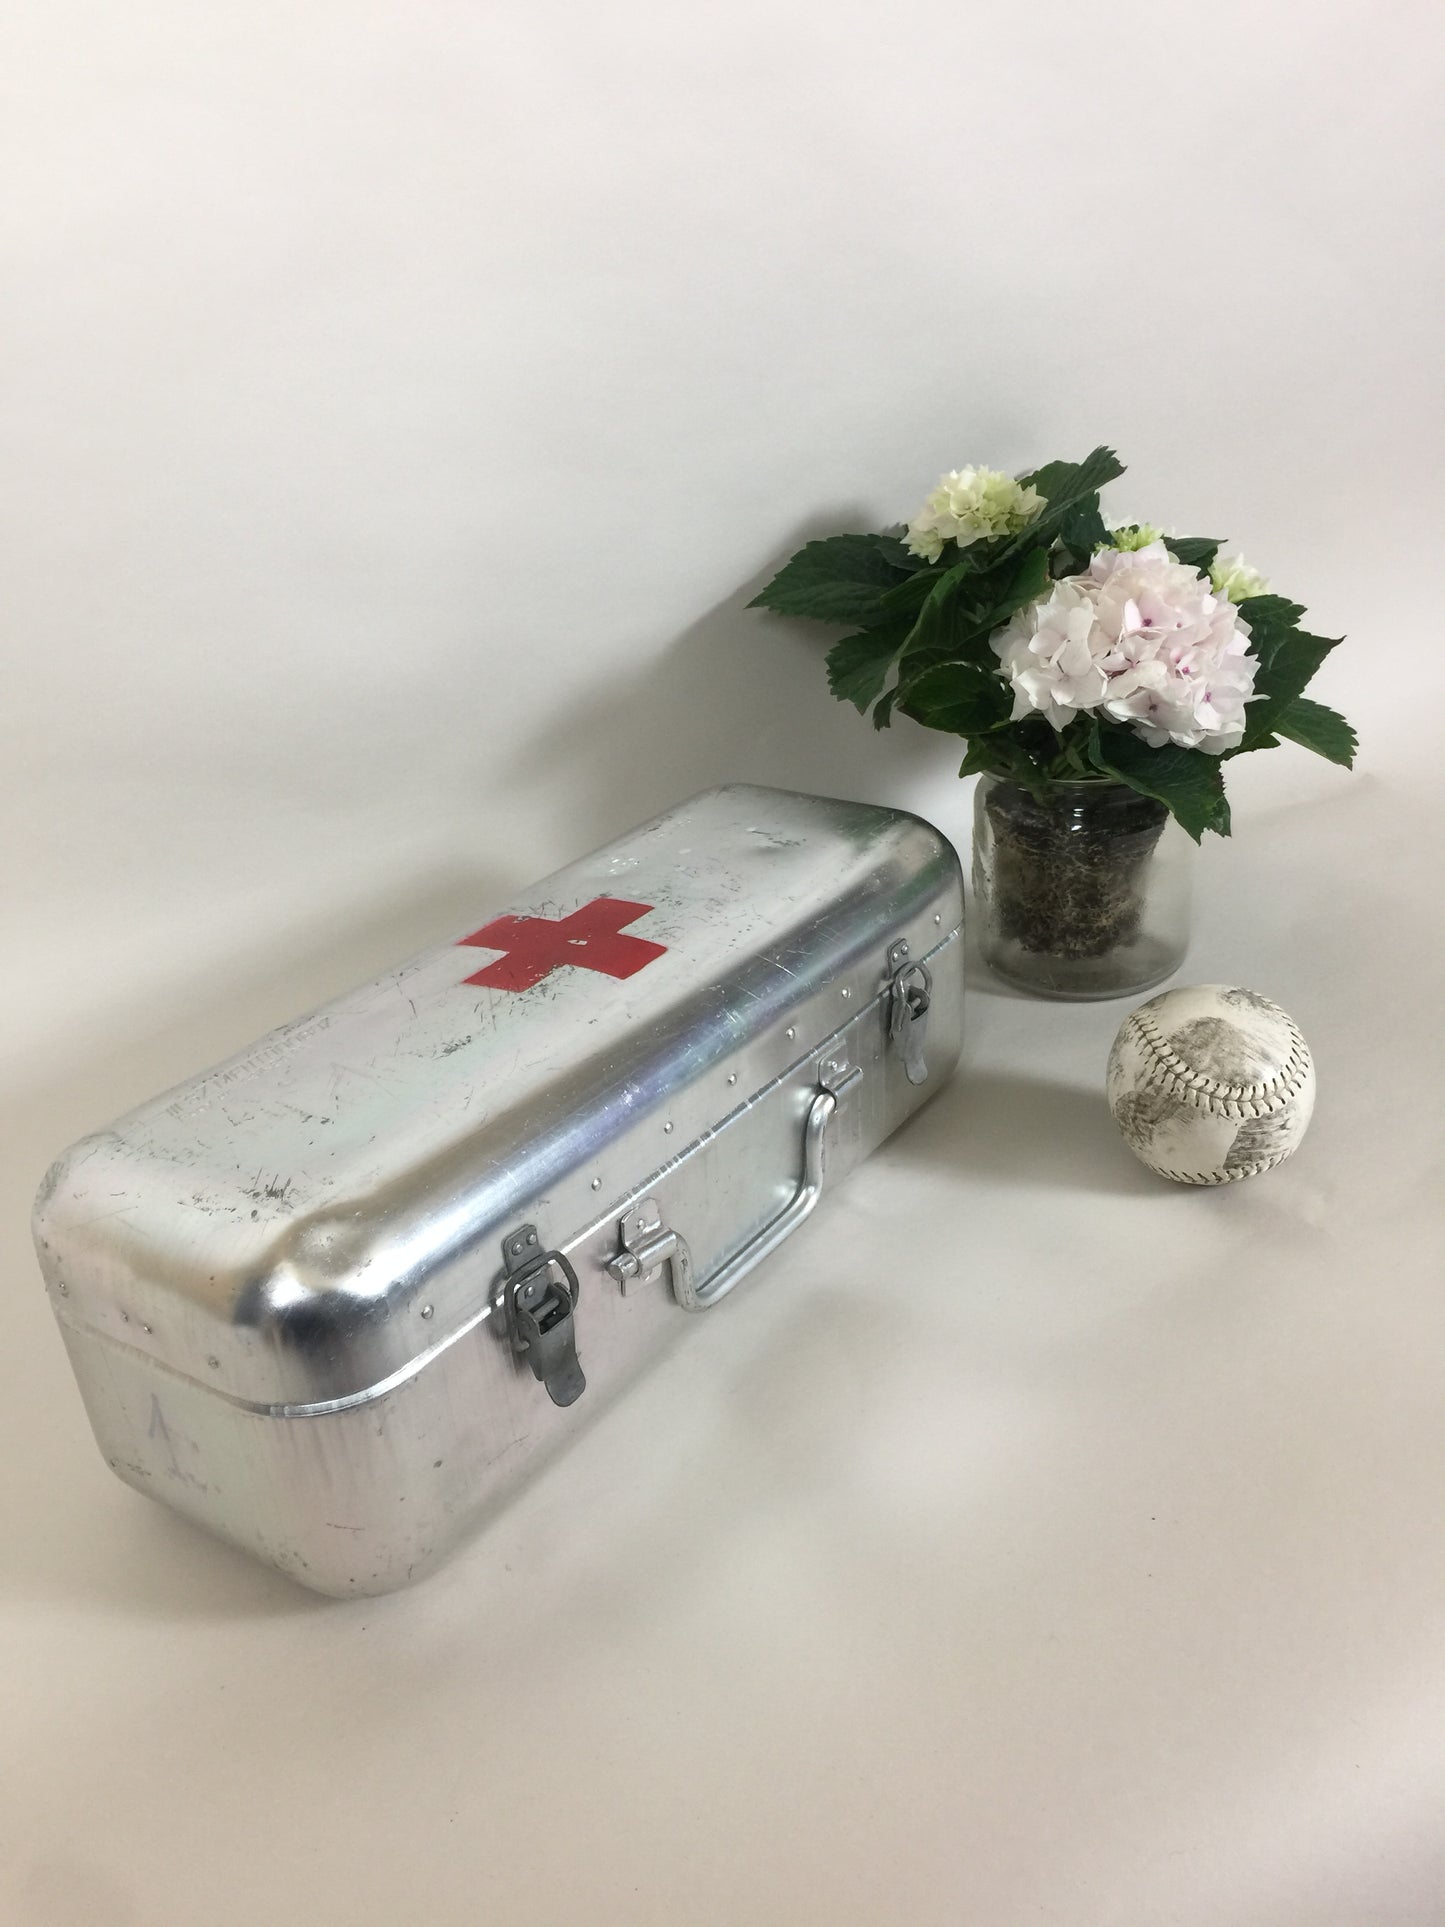 Schönes und grobes Erste-Hilfe-Set vom Roten Kreuz